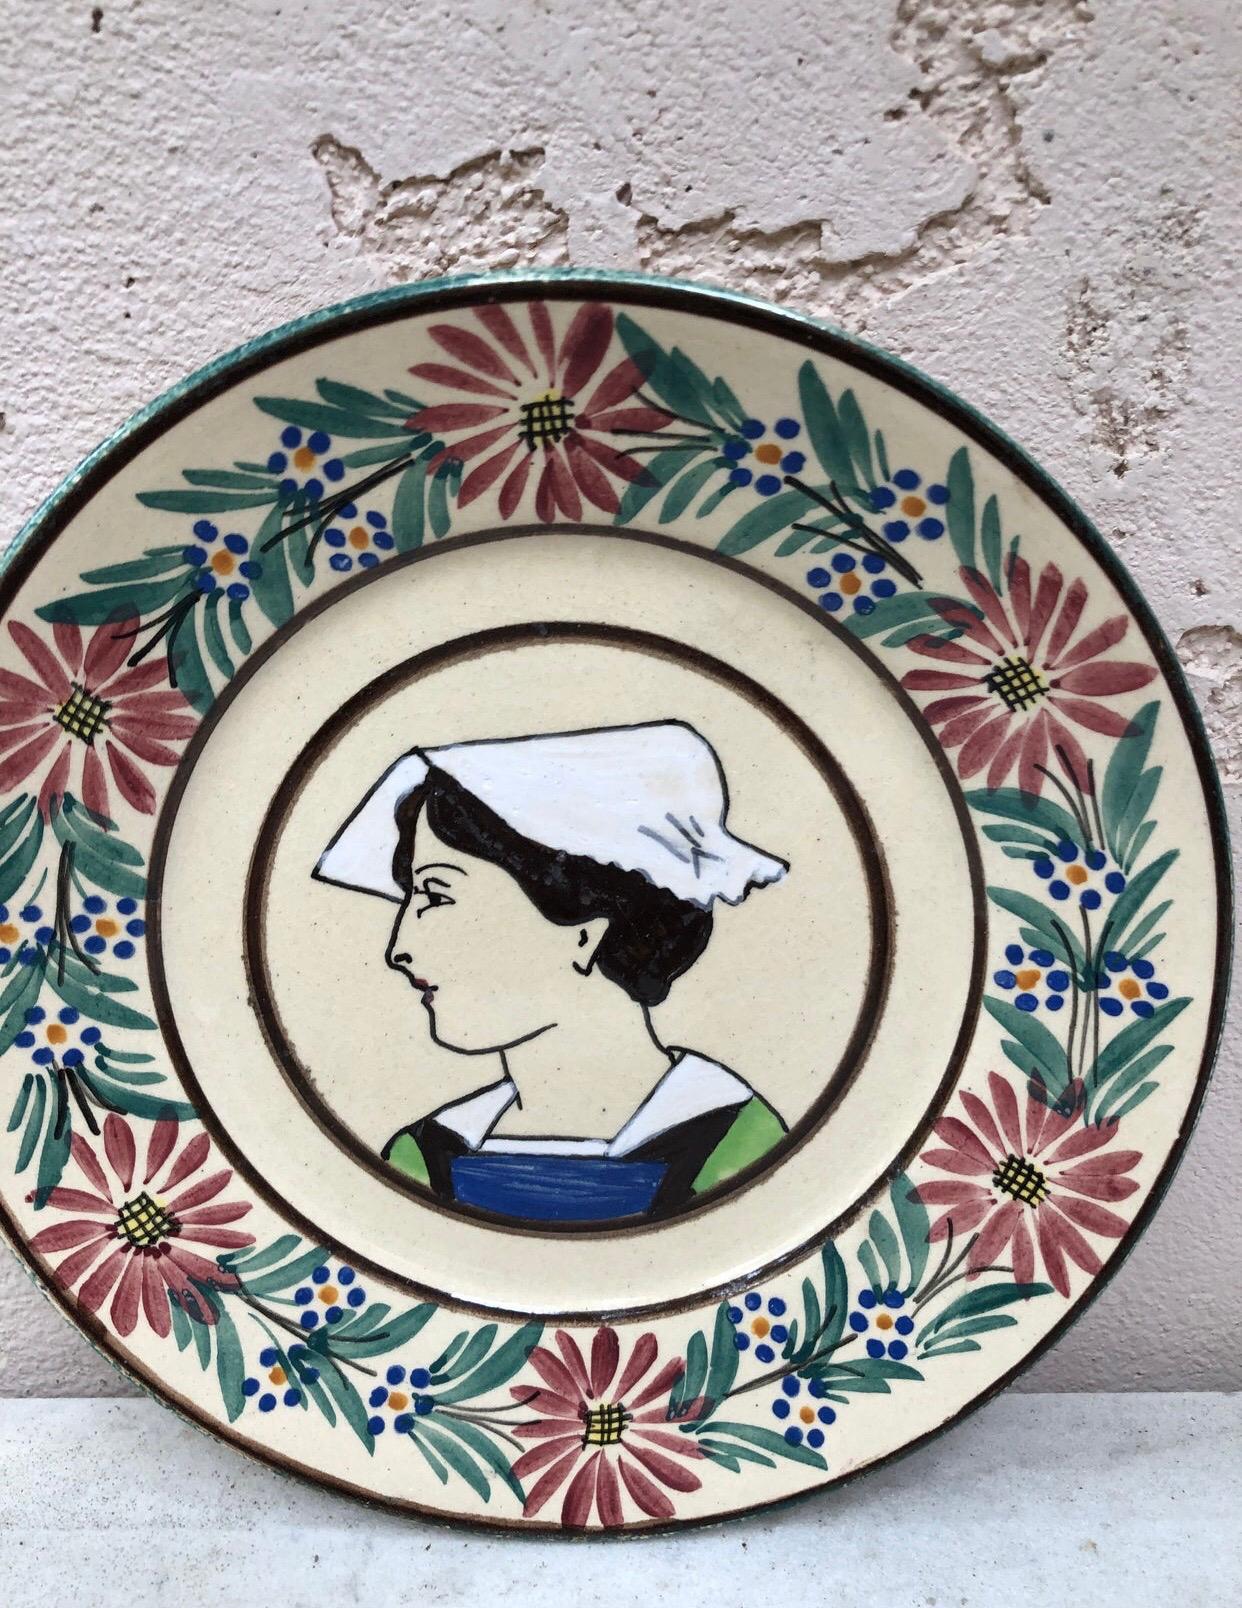 Assiette en faïence française Quimper, vers 1920
Bordure avec des fleurs, représentant une femme avec le costume traditionnel de la Bretagne.